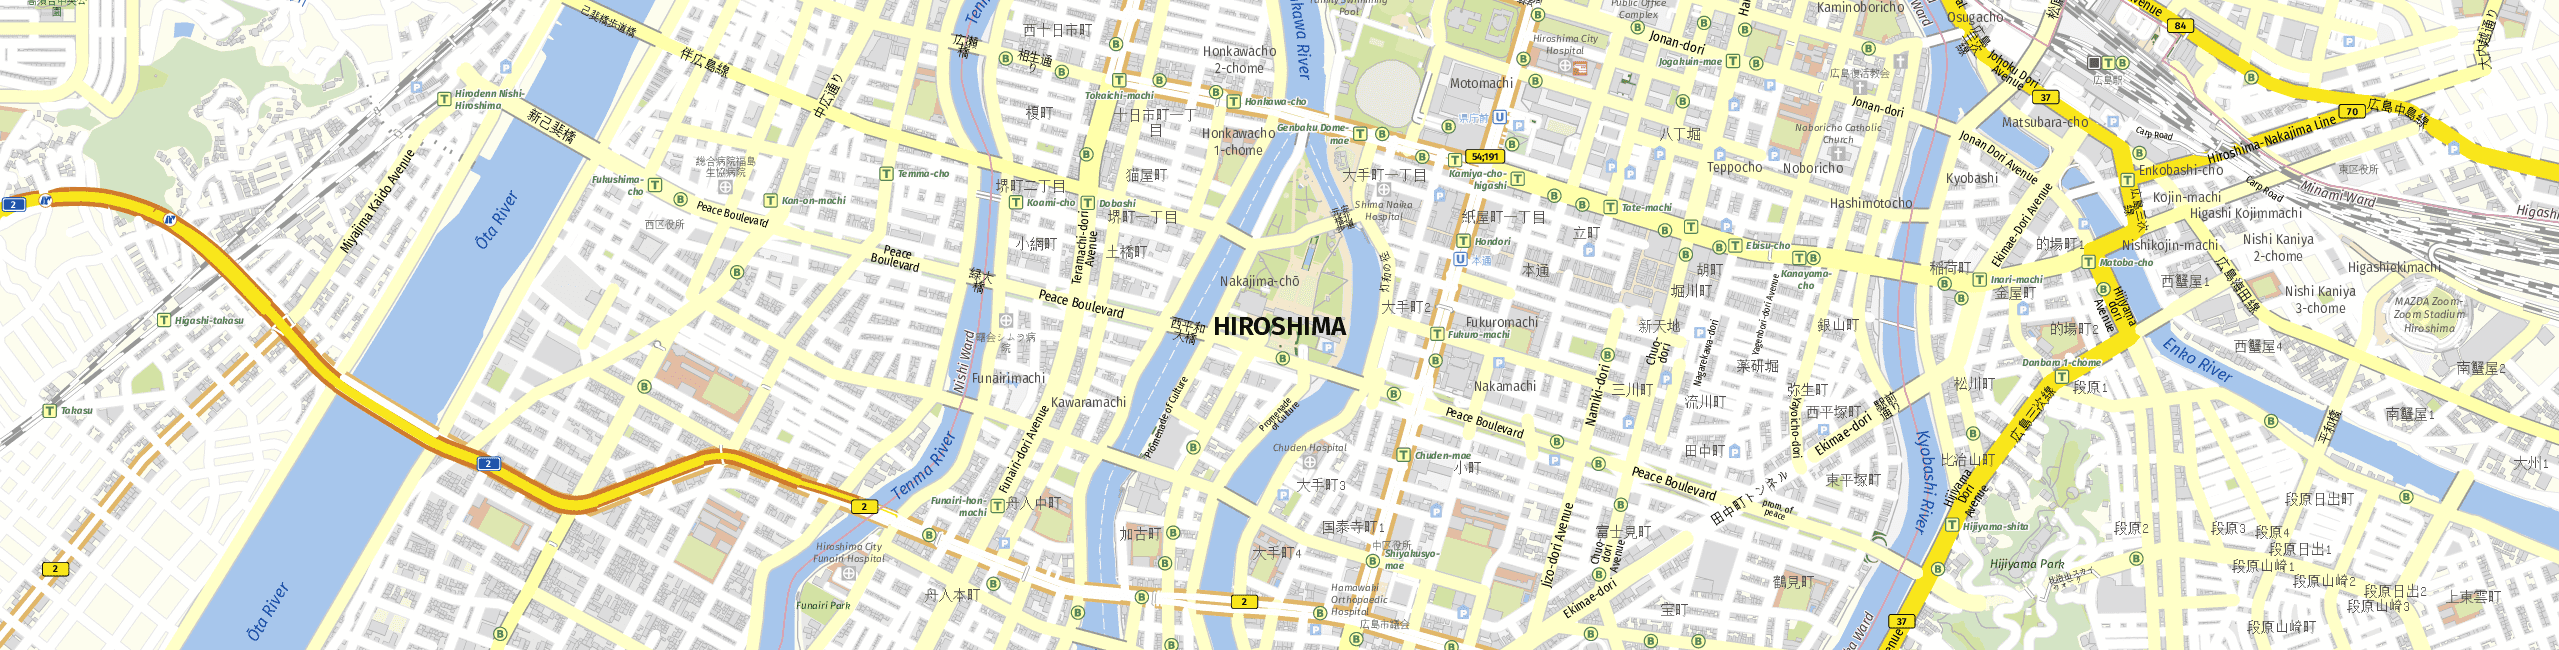 Stadtplan Hiroshima zum Downloaden.